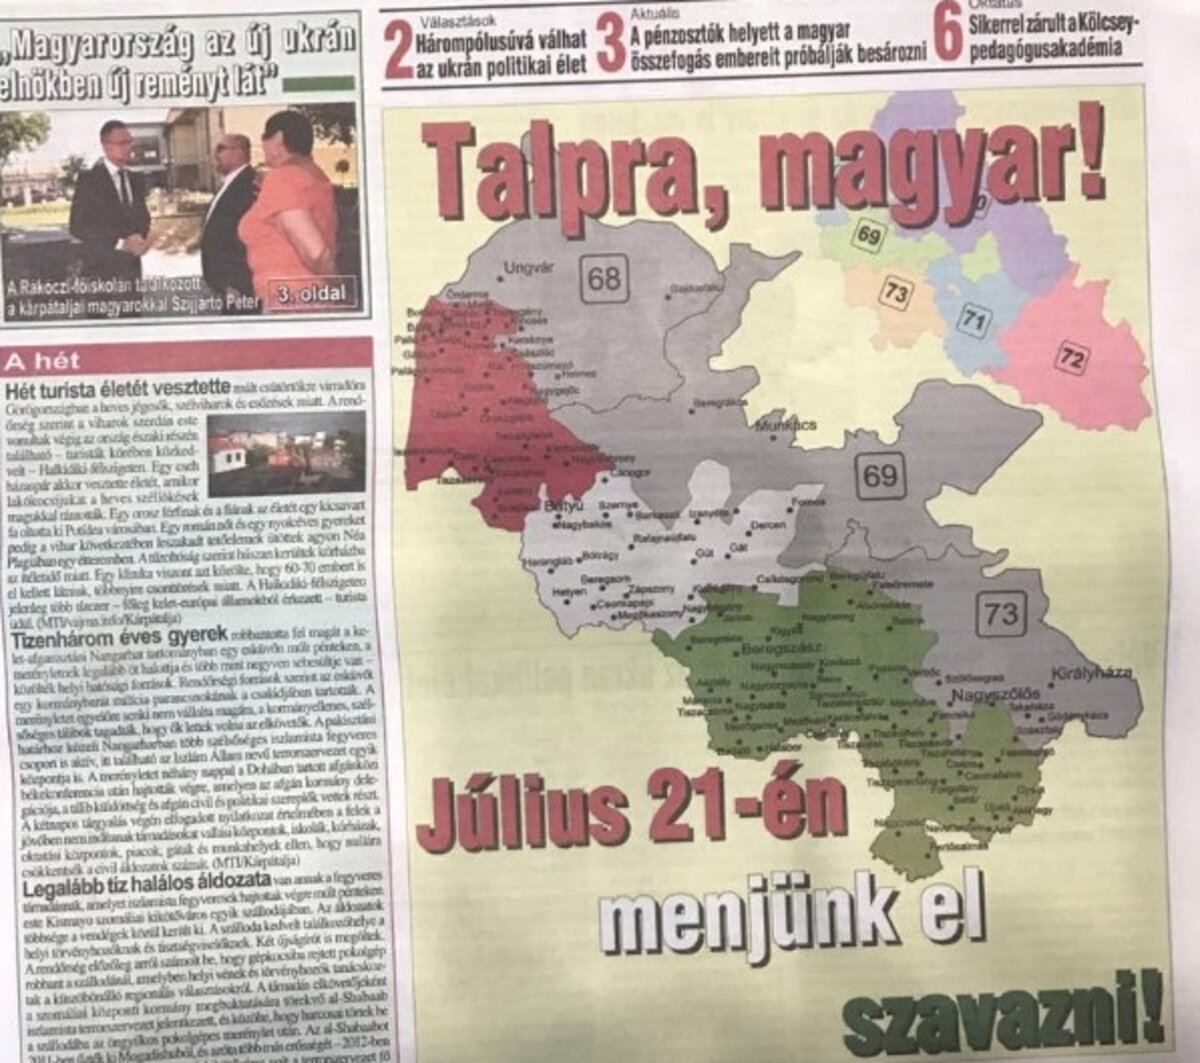 Союз венгров издал газету с картой Закарпатья в составе Венгрии – МИД